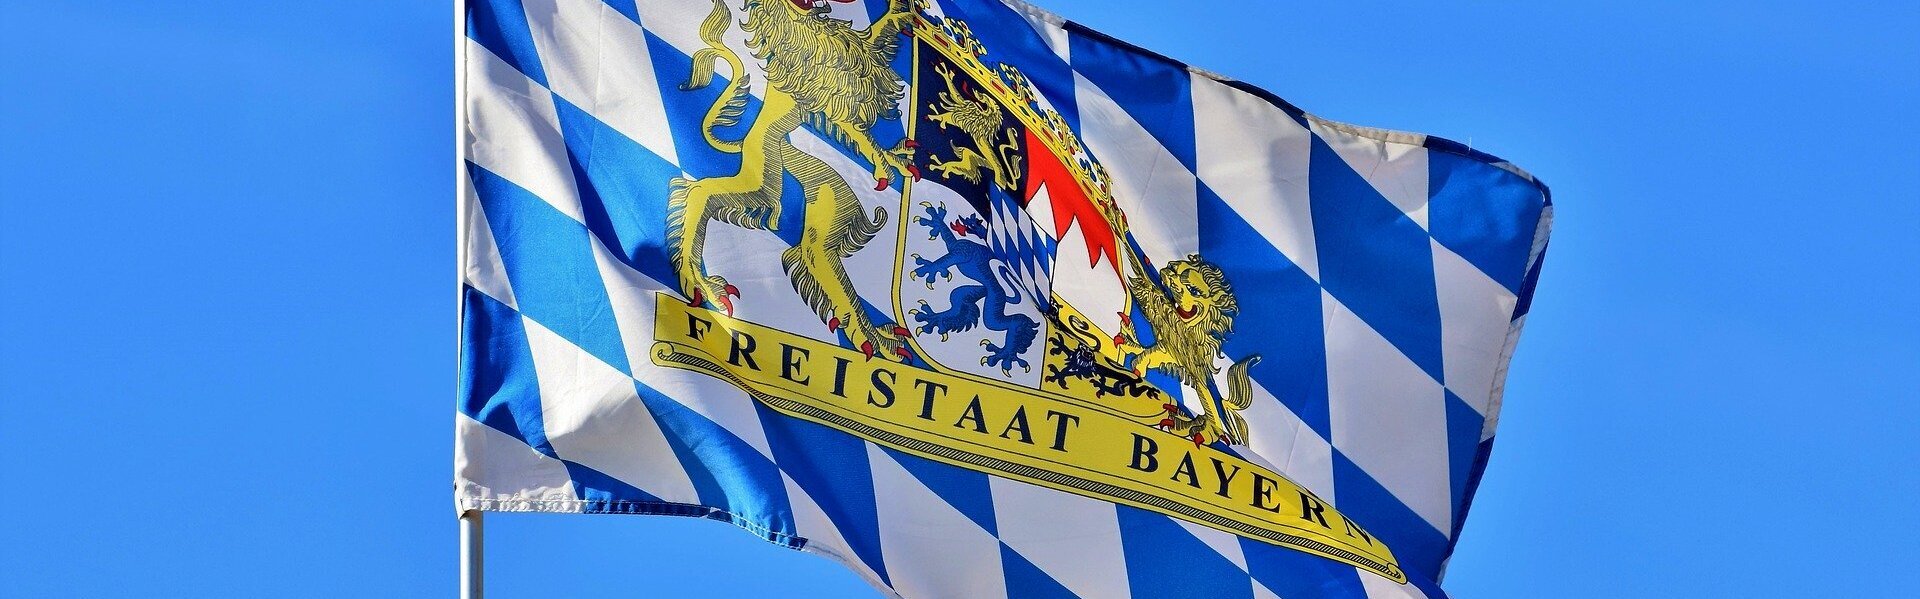 Das Bild zeiht Bayerns Flagge